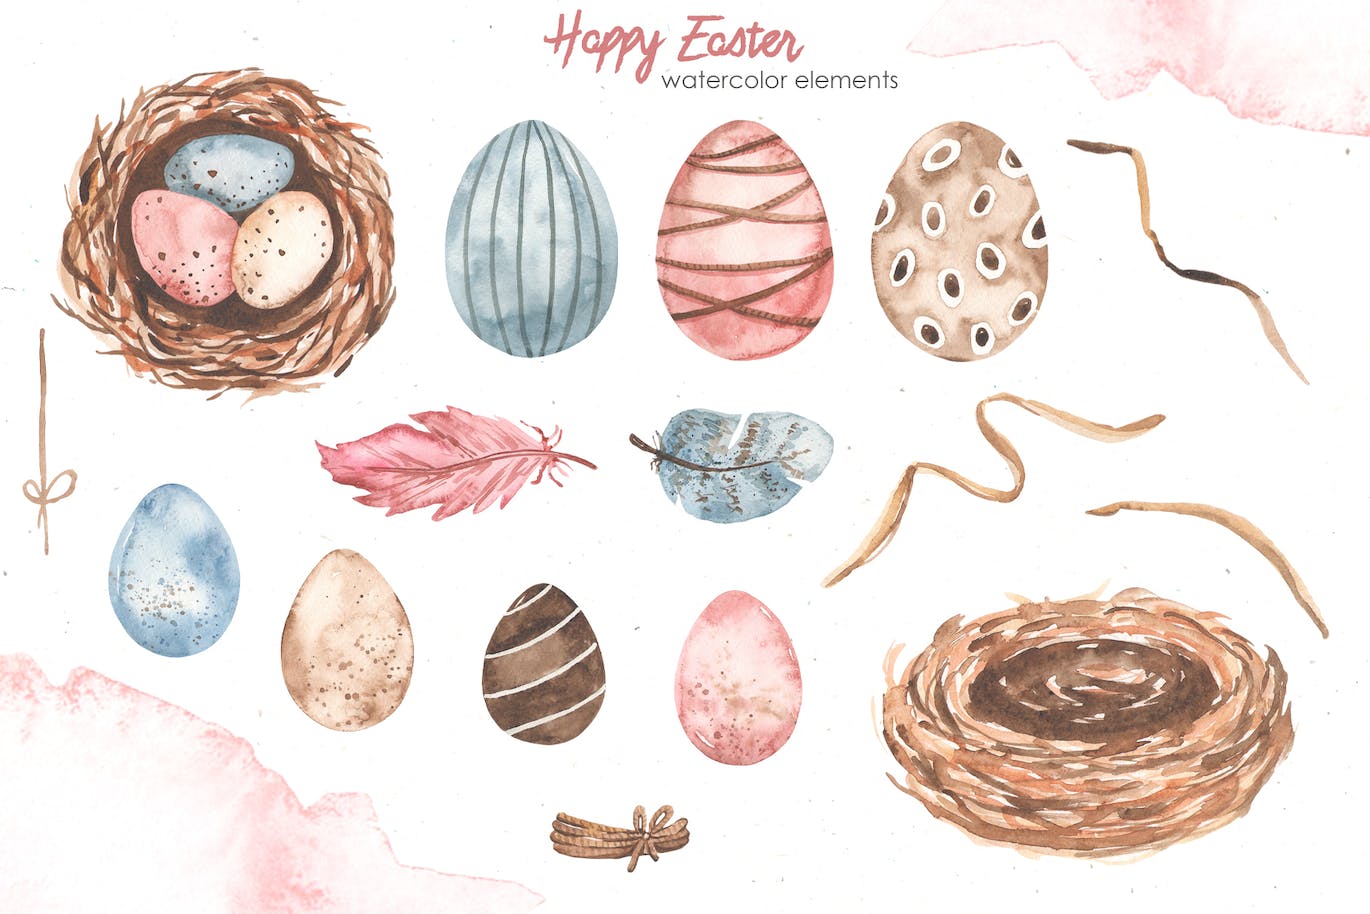 复活节快乐元素水彩画集 Happy Easter watercolor APP UI 第12张